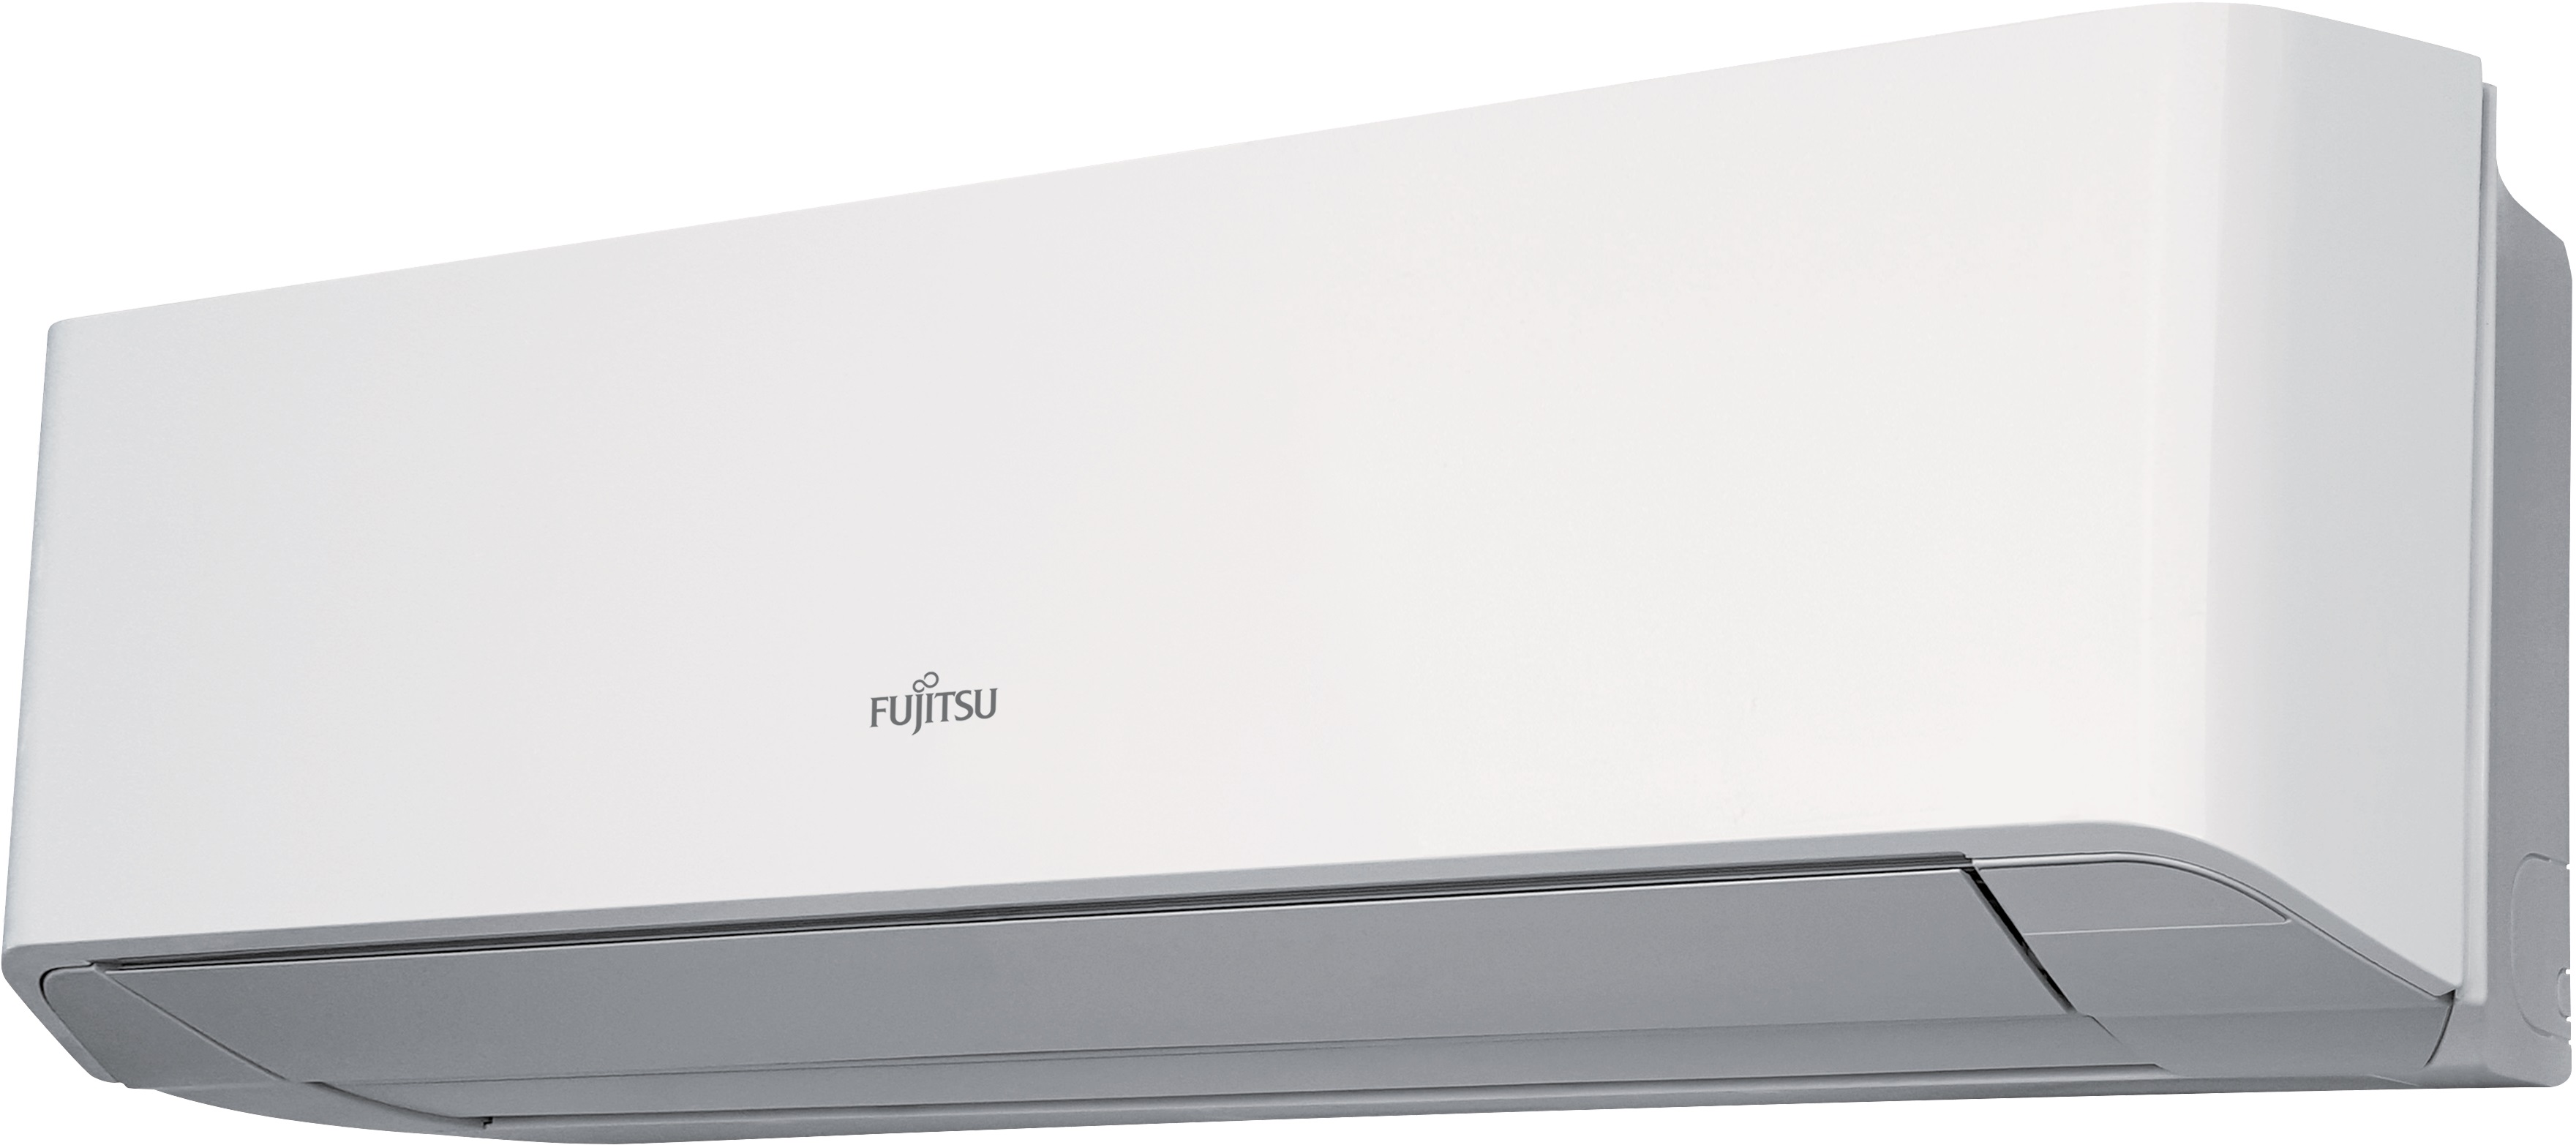 Кондиционеры Fujitsu серии Airflow в новом дизайне